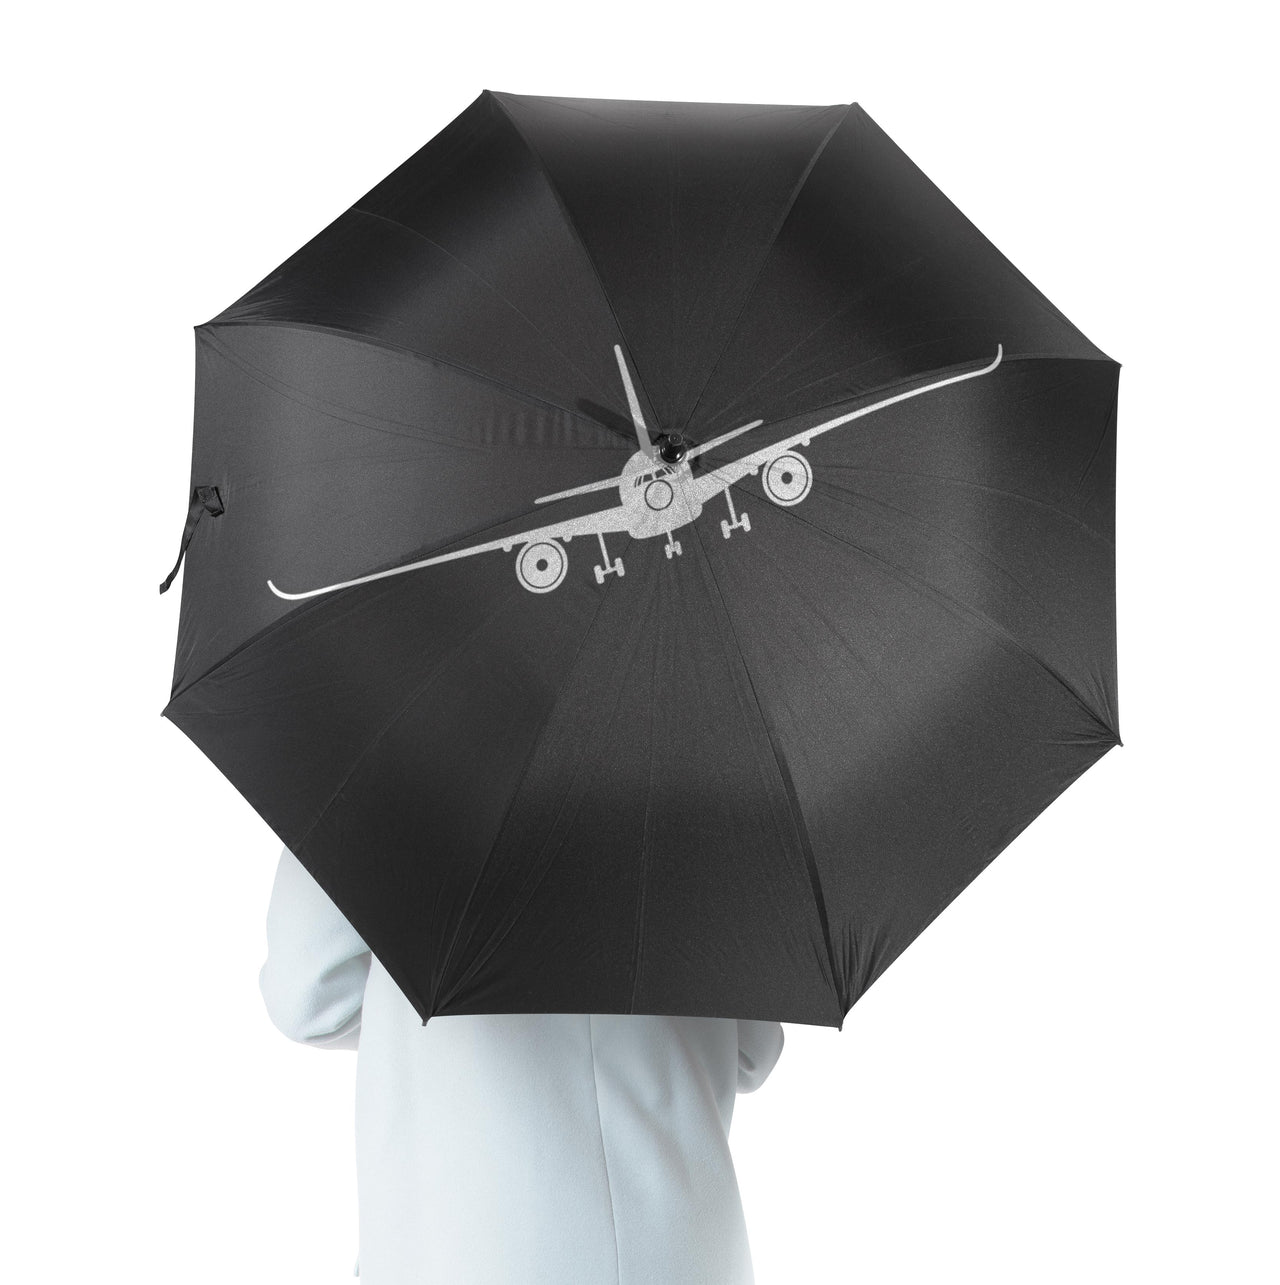 Airbus A350 Silhouette Designed Umbrella